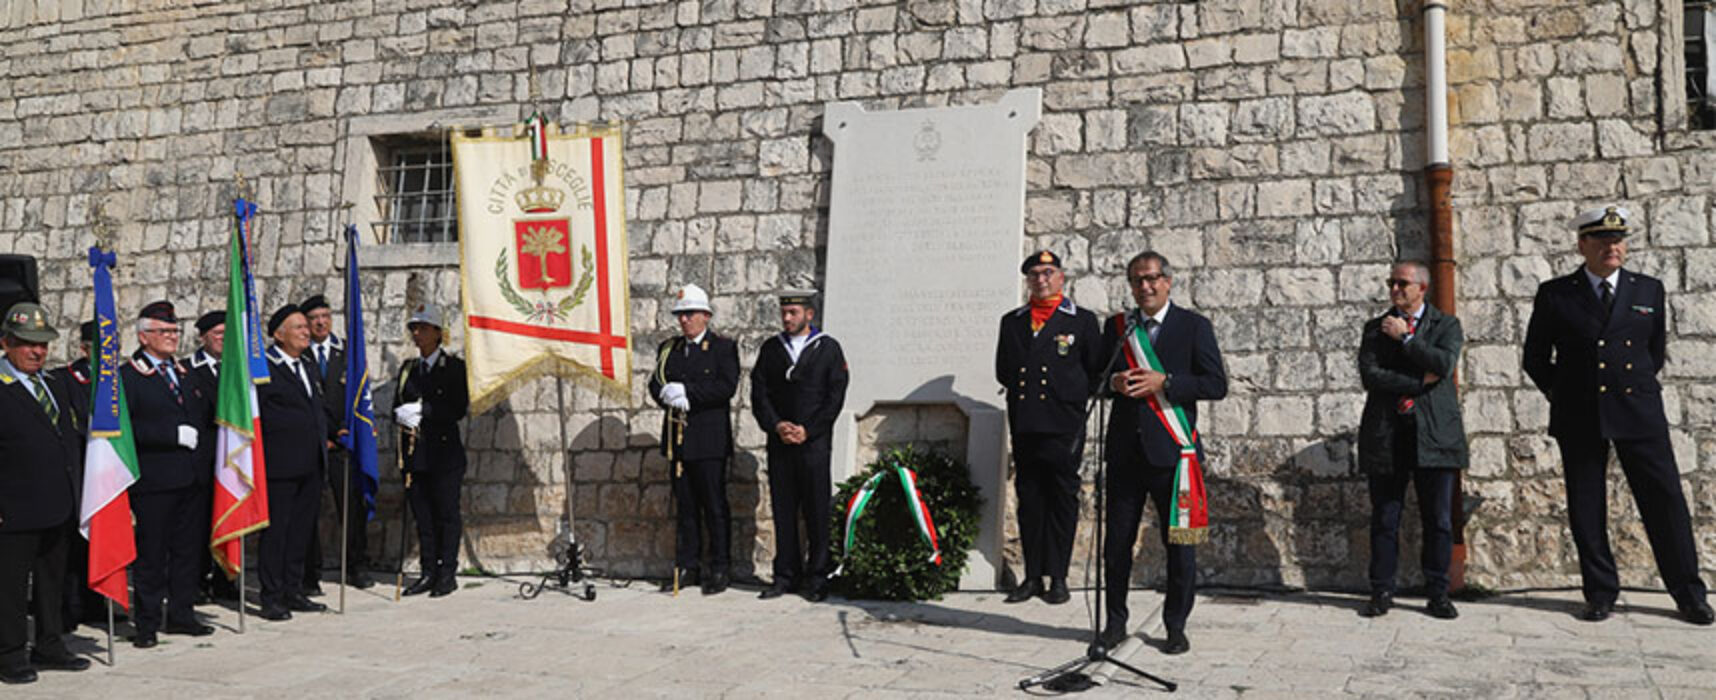 Bisceglie onora memoria caduti Corazzata Roma, Angarano: “Preservare principi Costituzione” / FOTO